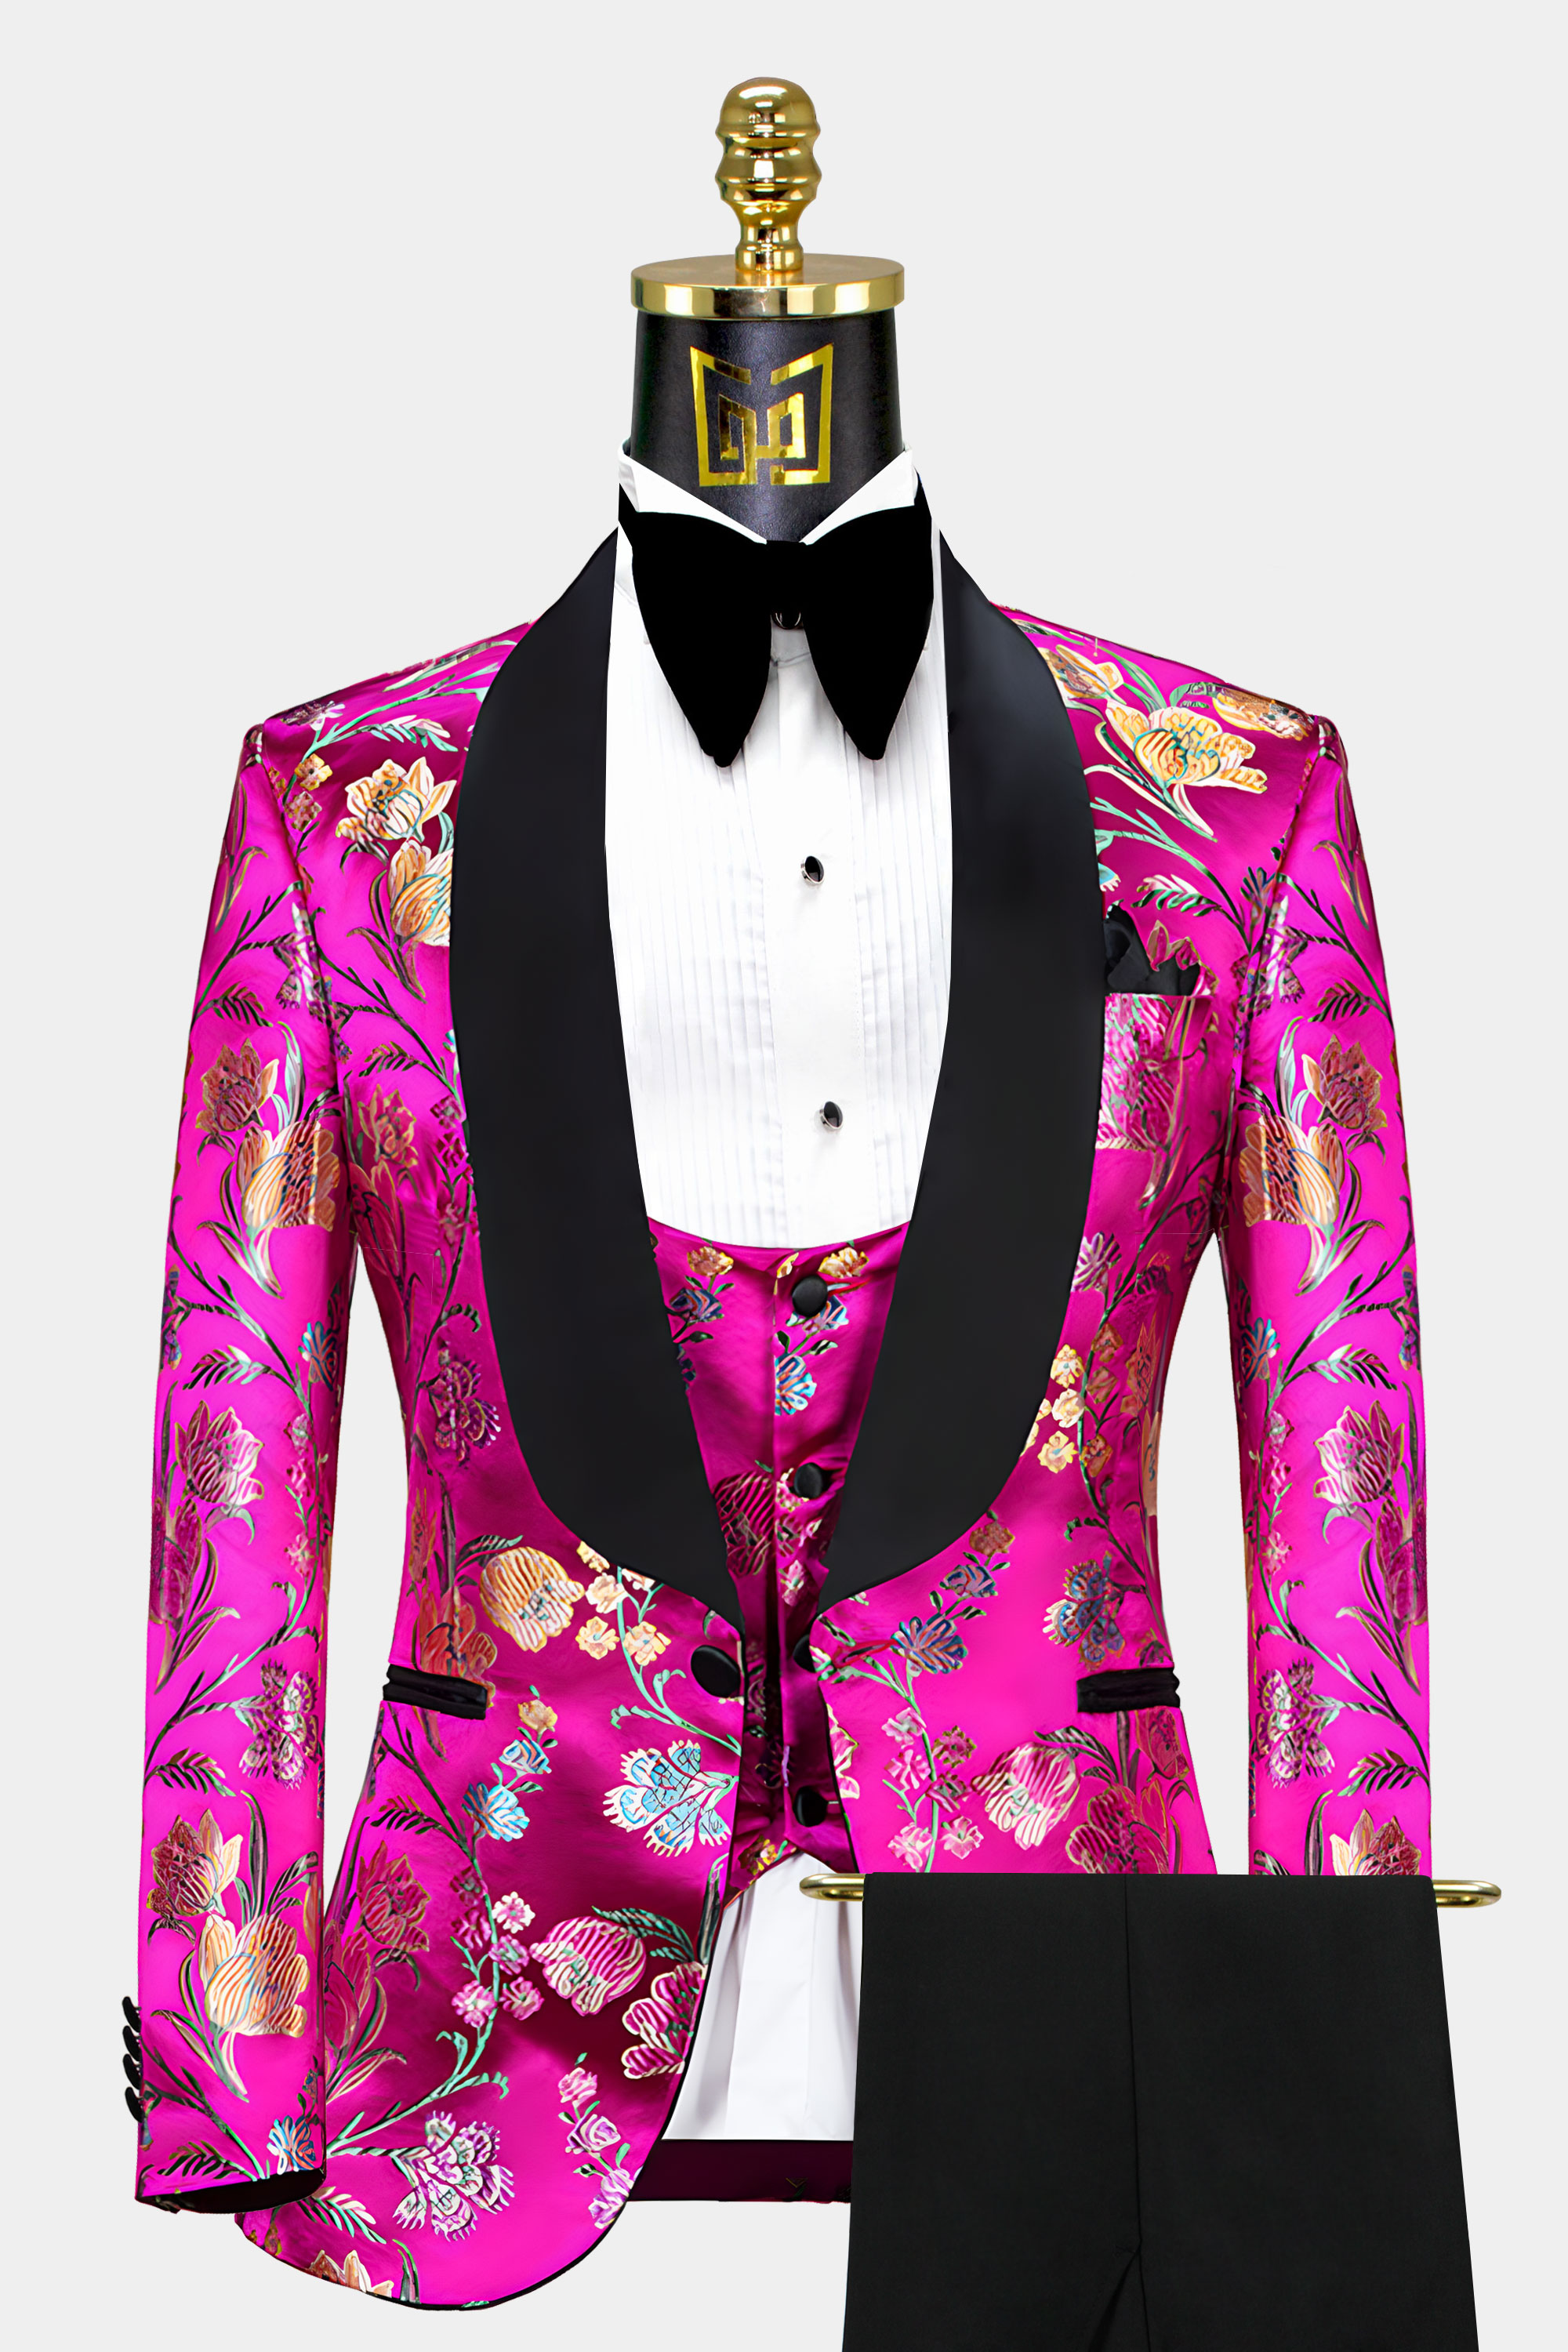 Mens-Hot-Pink-and-Gold-Tuxedo-Suit-from-Gentlemansguru.com